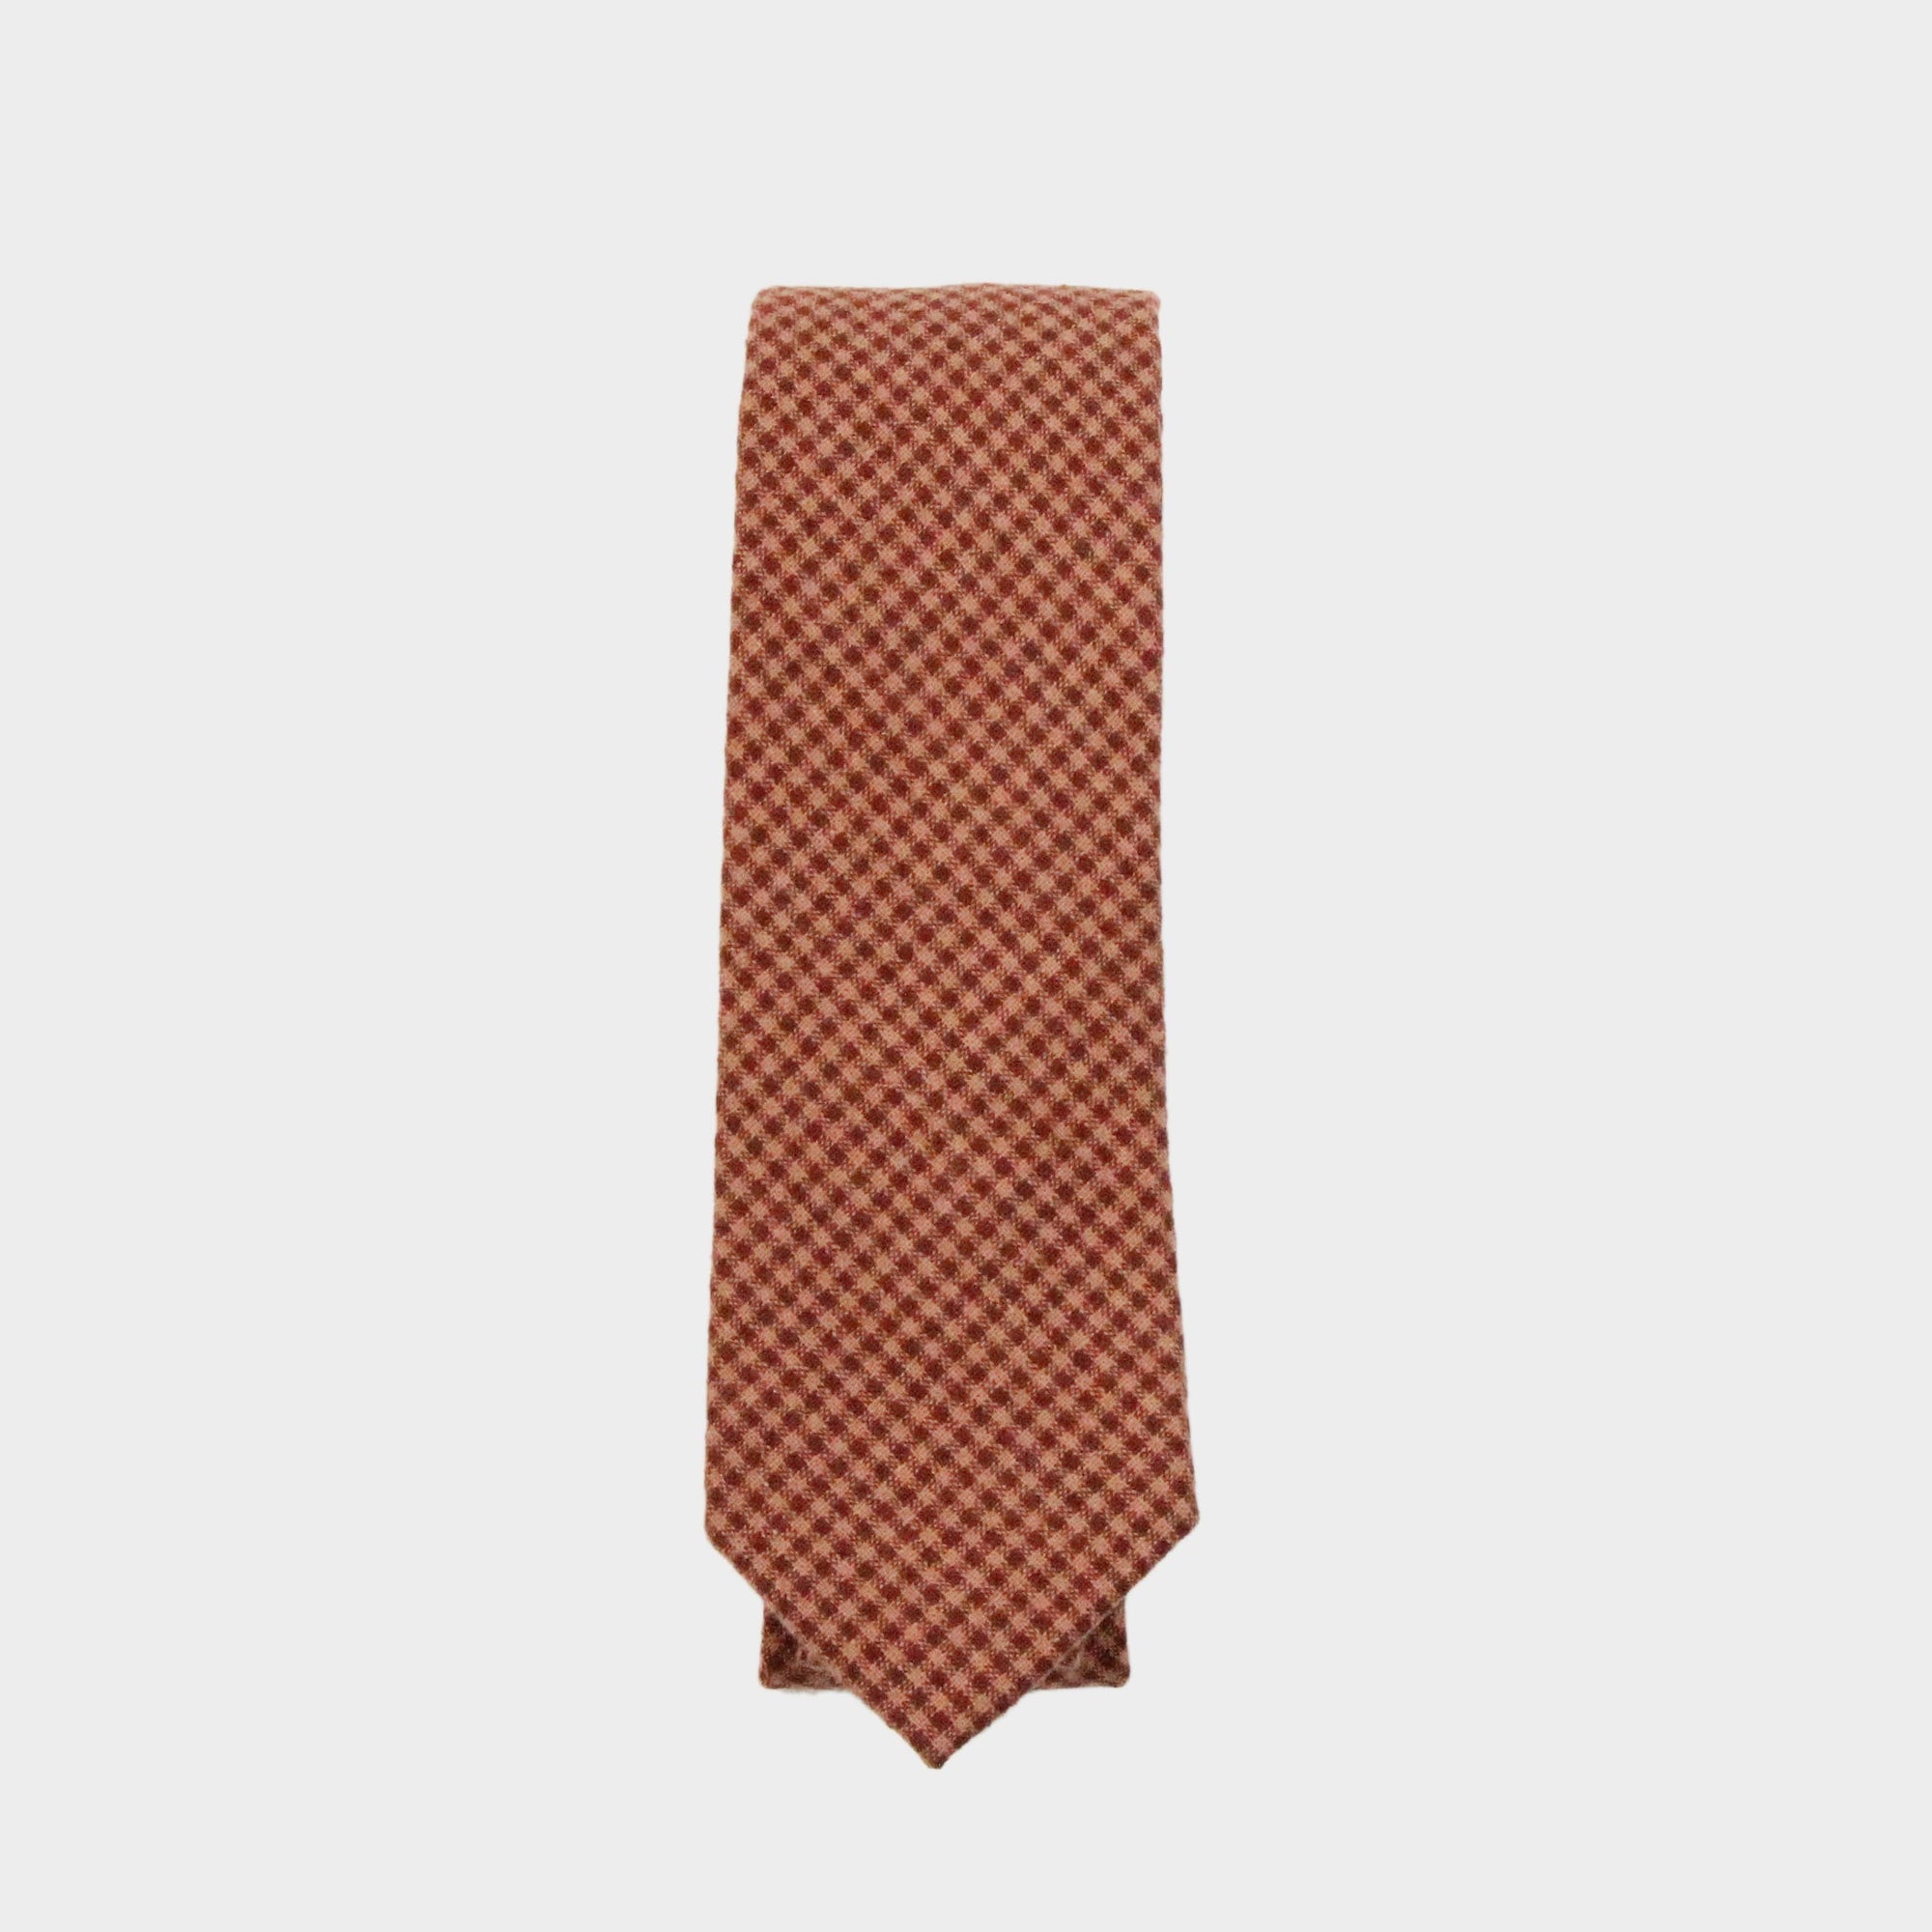 HAYDEN - Men's Tie